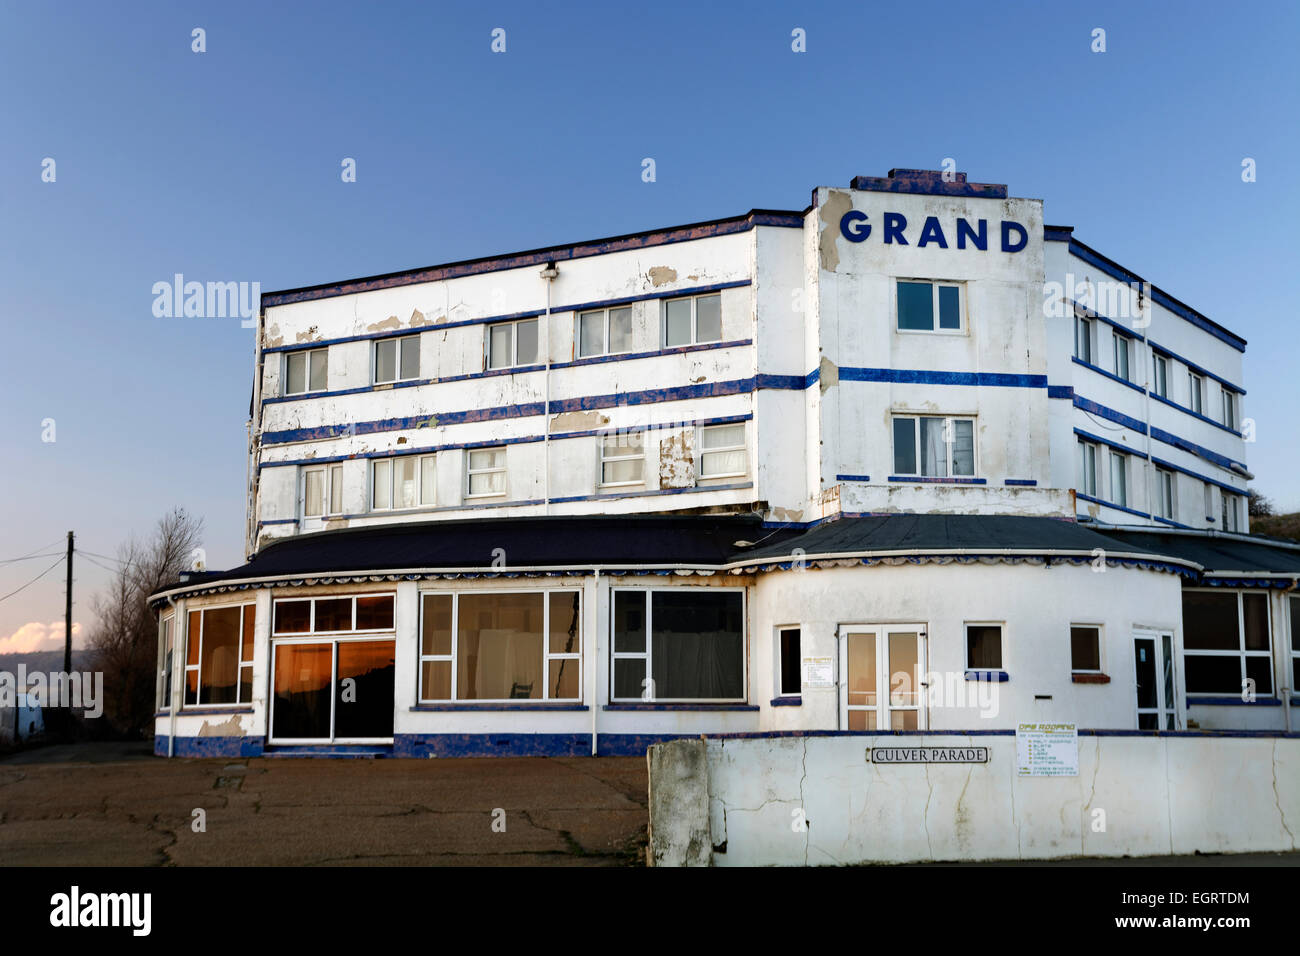 Das Grand Hotel, nicht auf der Suche so Grand, jetzt leeren und benötigen Investitionen in seiner erstklassigen Lage direkt am Strand in Sandown, uk Stockfoto